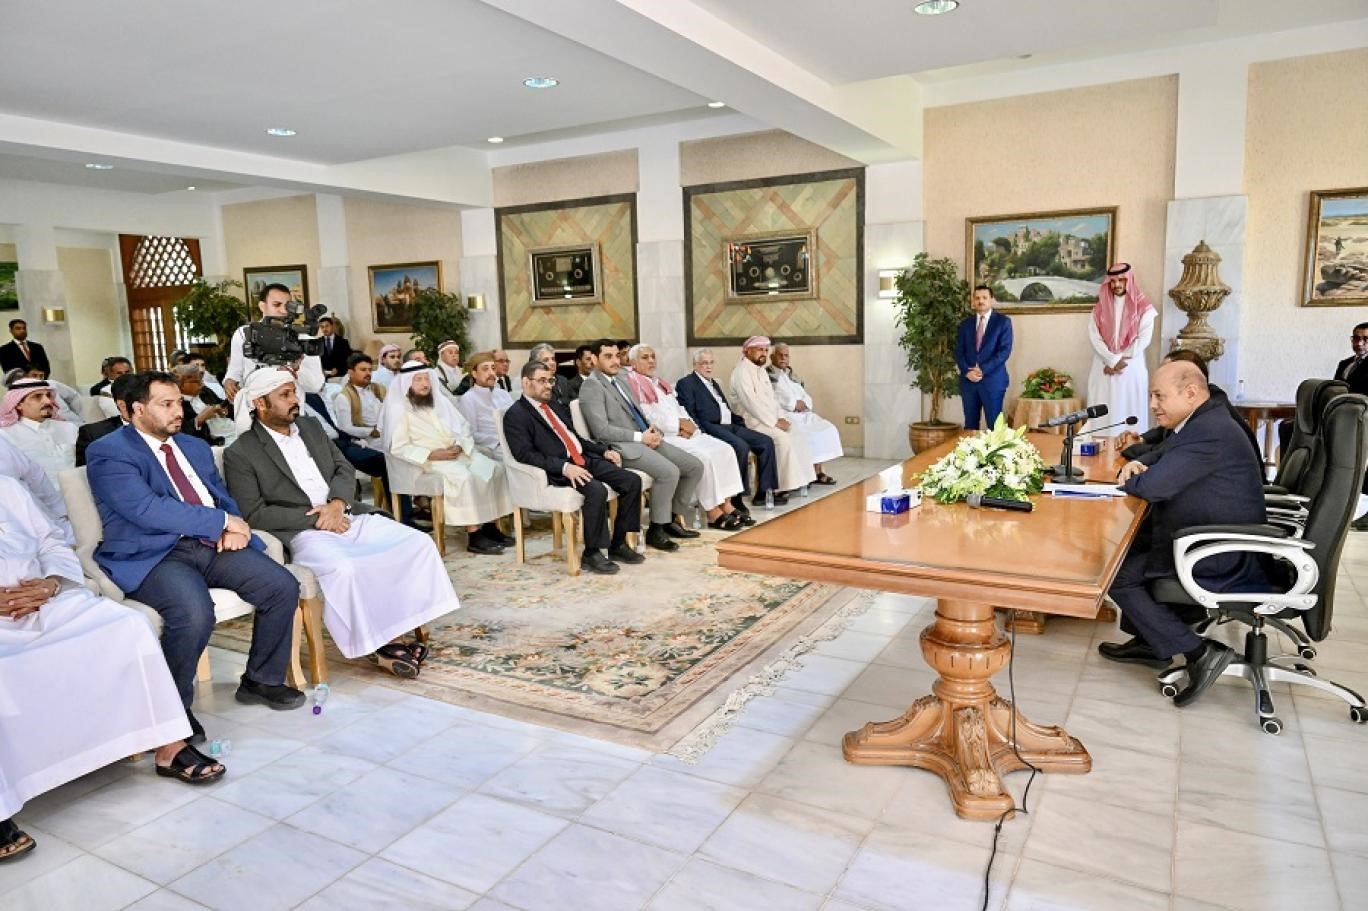 دوافع تشكيل “مجلس حضرموت الوطني” في جنوب اليمن